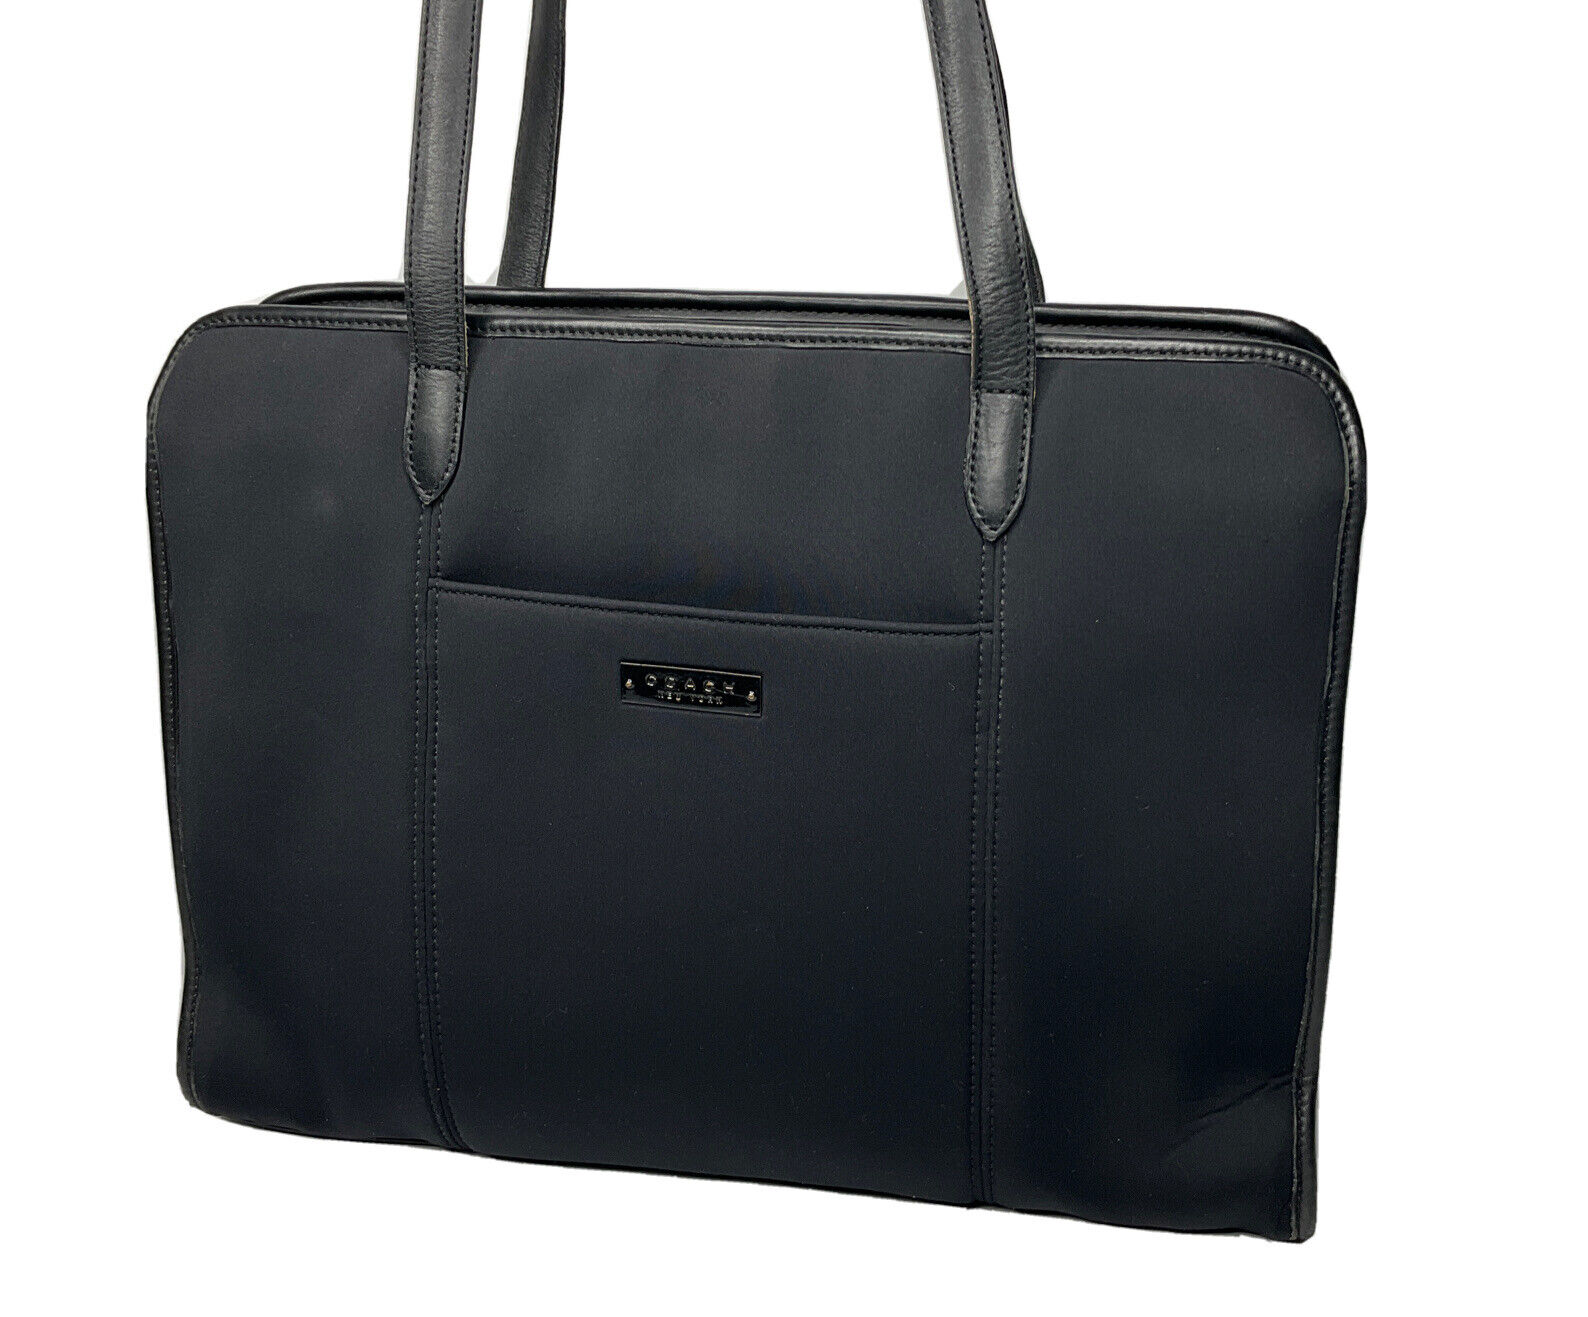 Vintage Coach Laptop Bag Nylon Leather Briefcase Shoulder Padded Bag 6216 Black